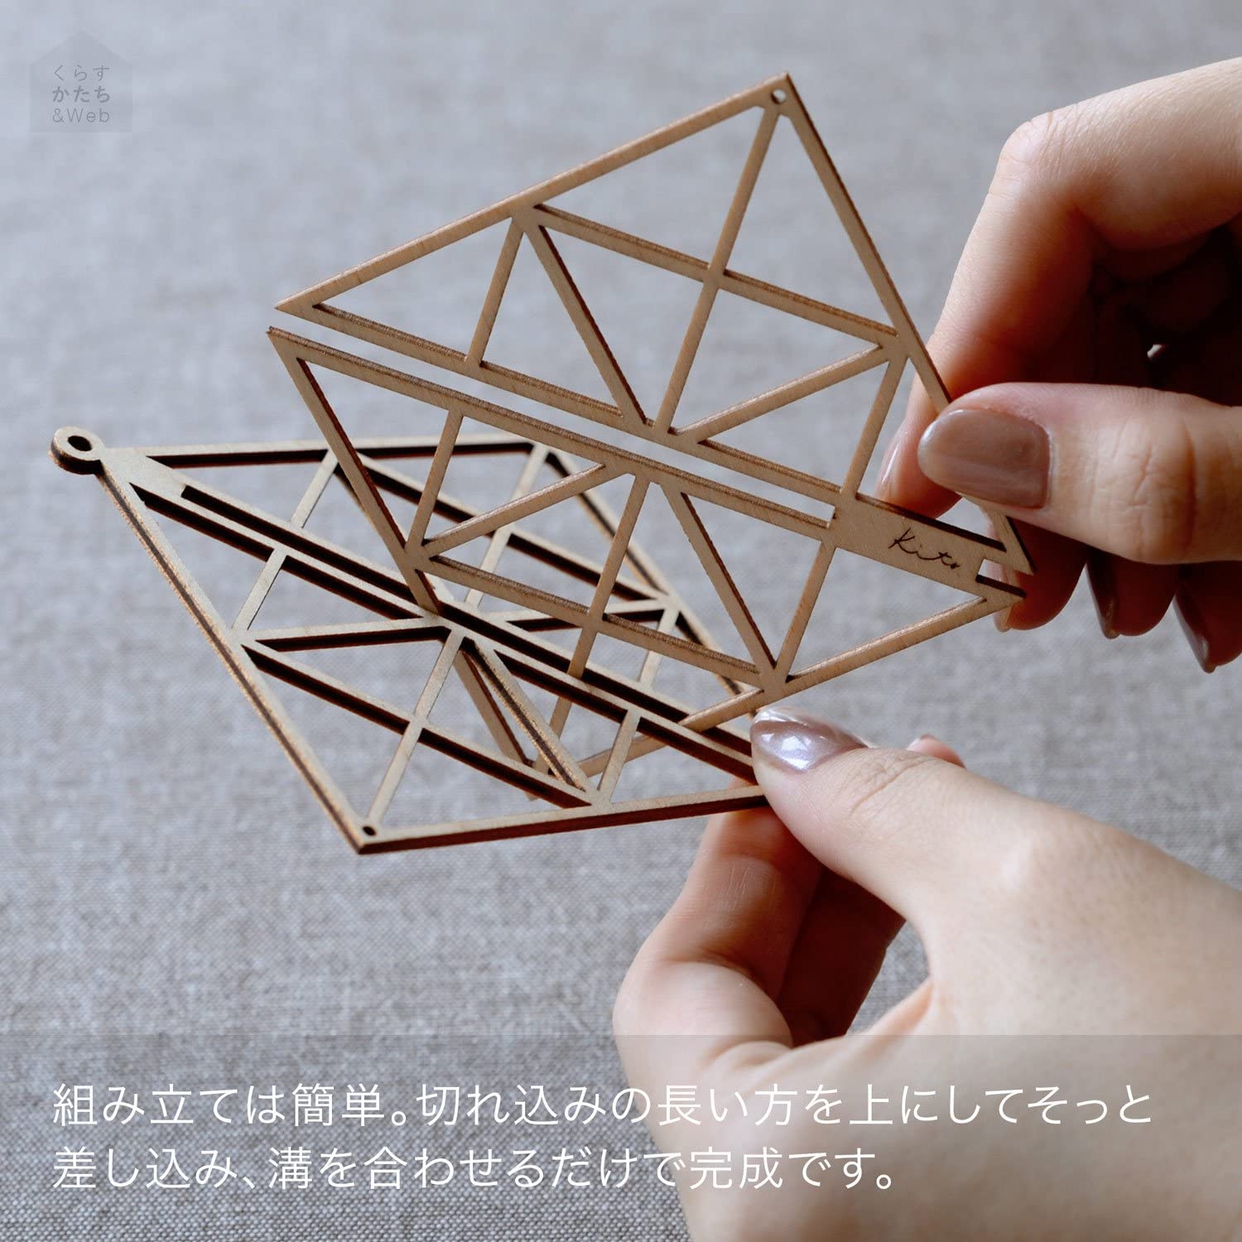 hushykke(ハシュケ) Kito 木製オーナメントの商品画像4 